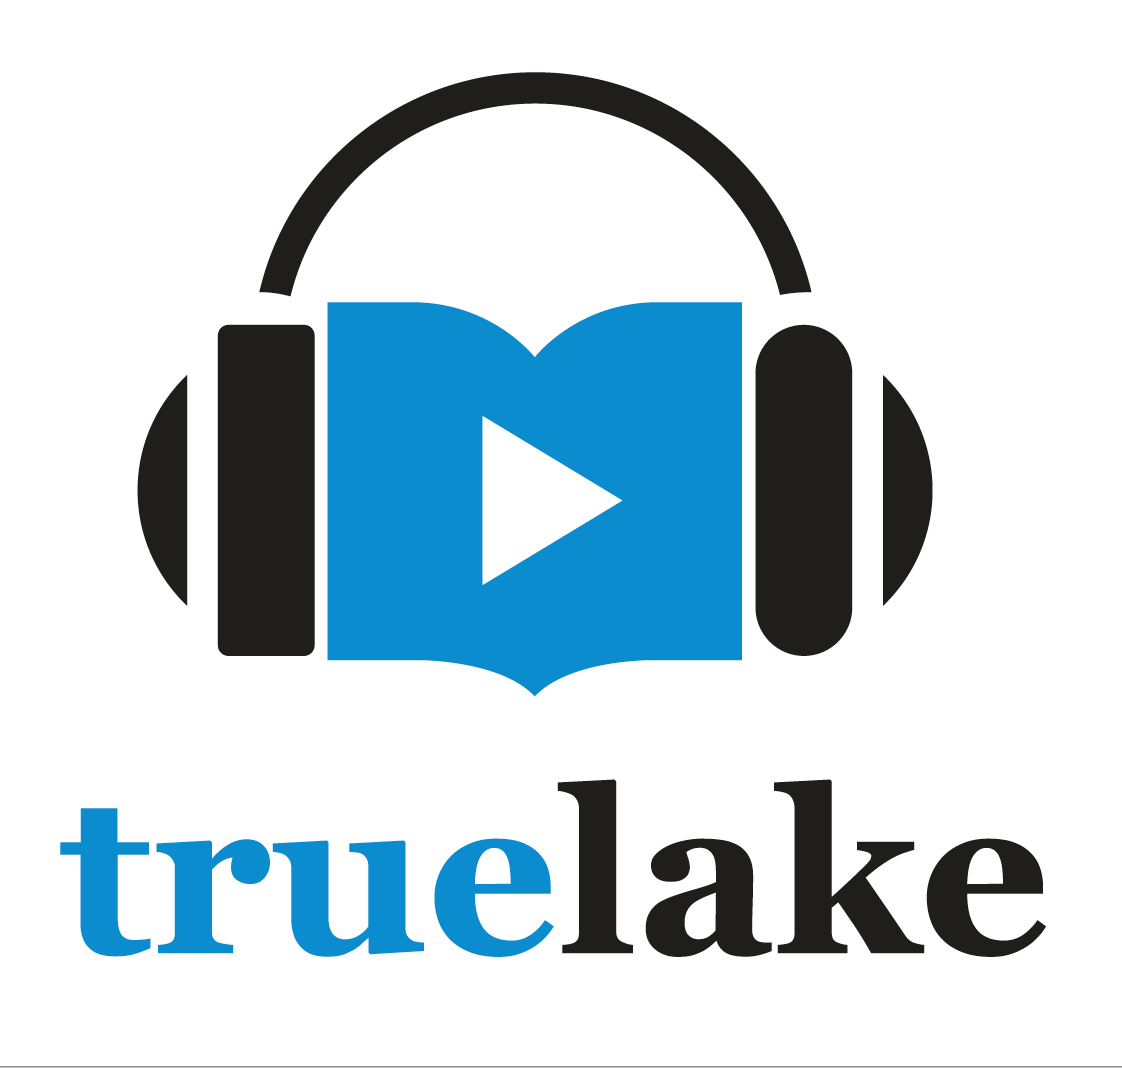 TrueLake Logo